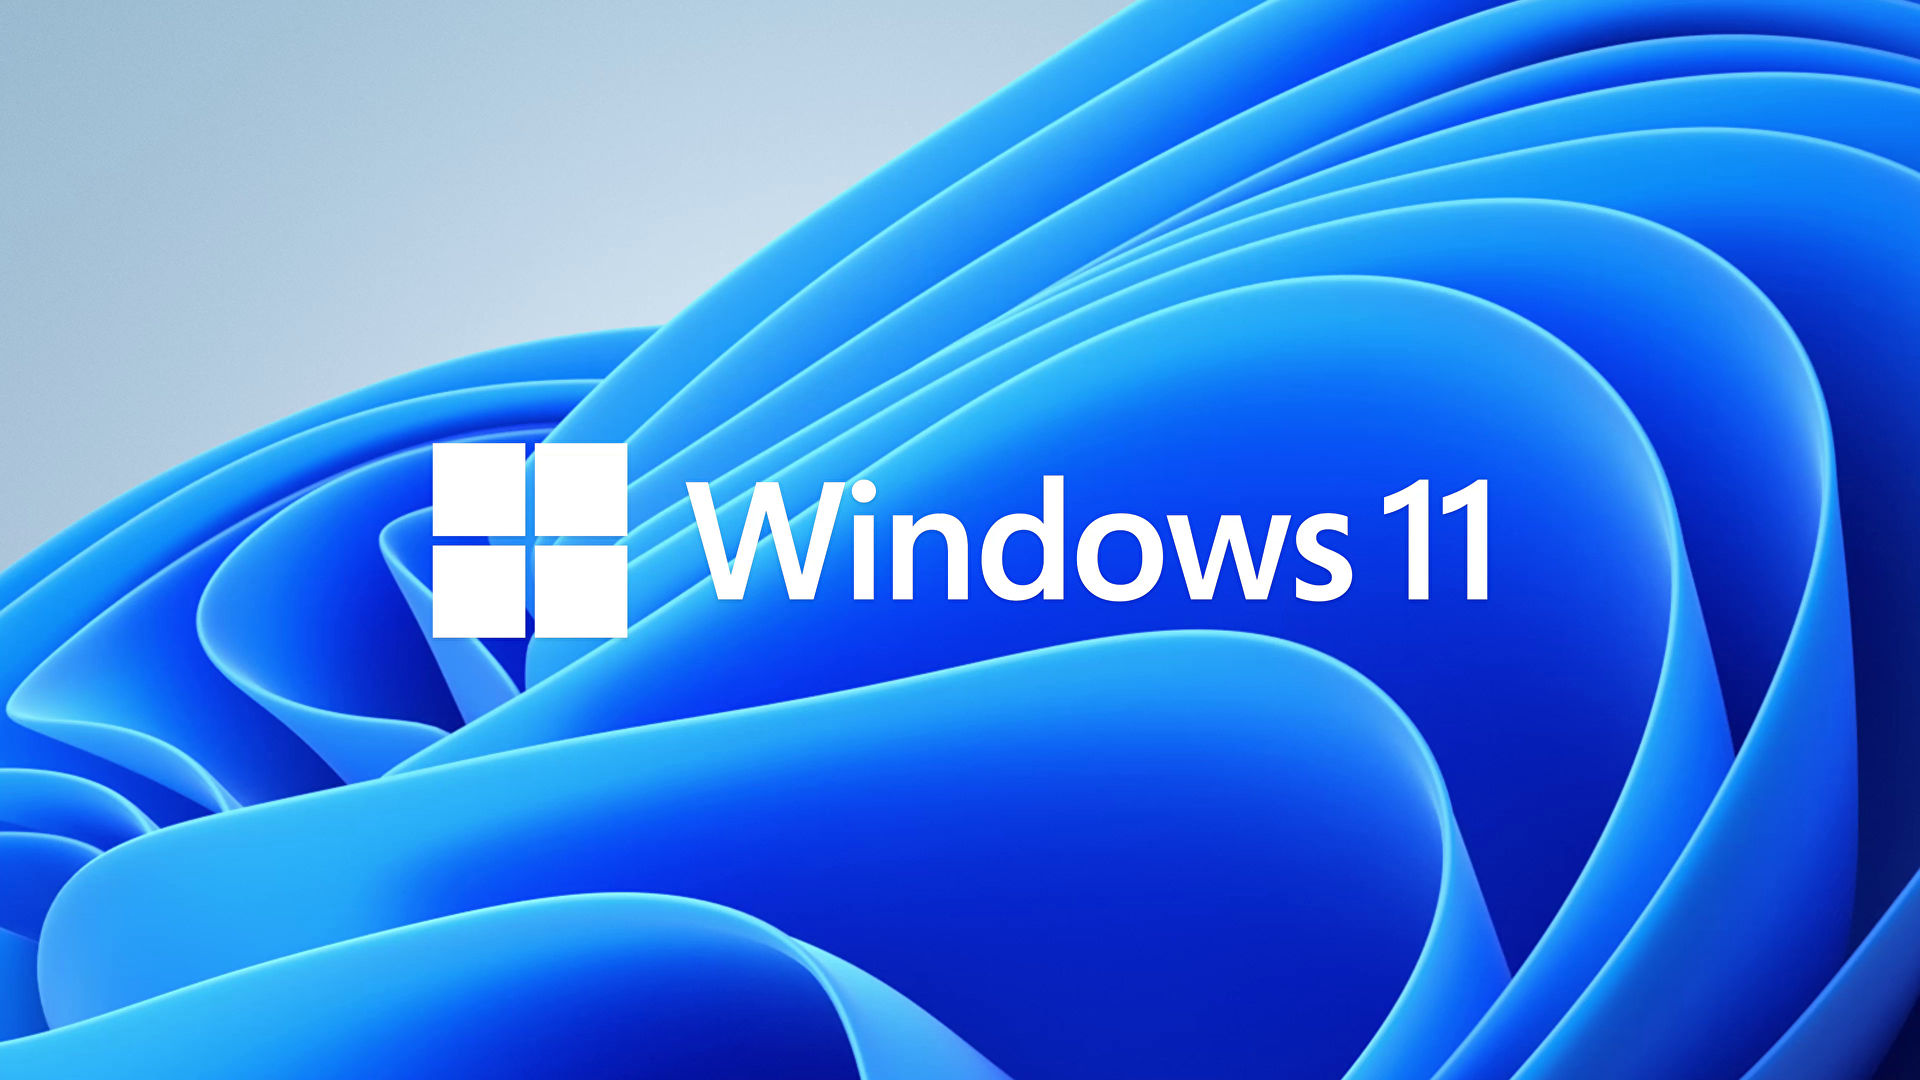 Bạn muốn trải nghiệm Windows 11 với nhiều tính năng đỉnh cao và thiết kế mới lạ? Đừng bỏ lỡ cơ hội tải và cài đặt miễn phí hệ điều hành này với link tải uy tín và nhanh chóng. Quá trình cài đặt đơn giản và dễ dàng cho người dùng.